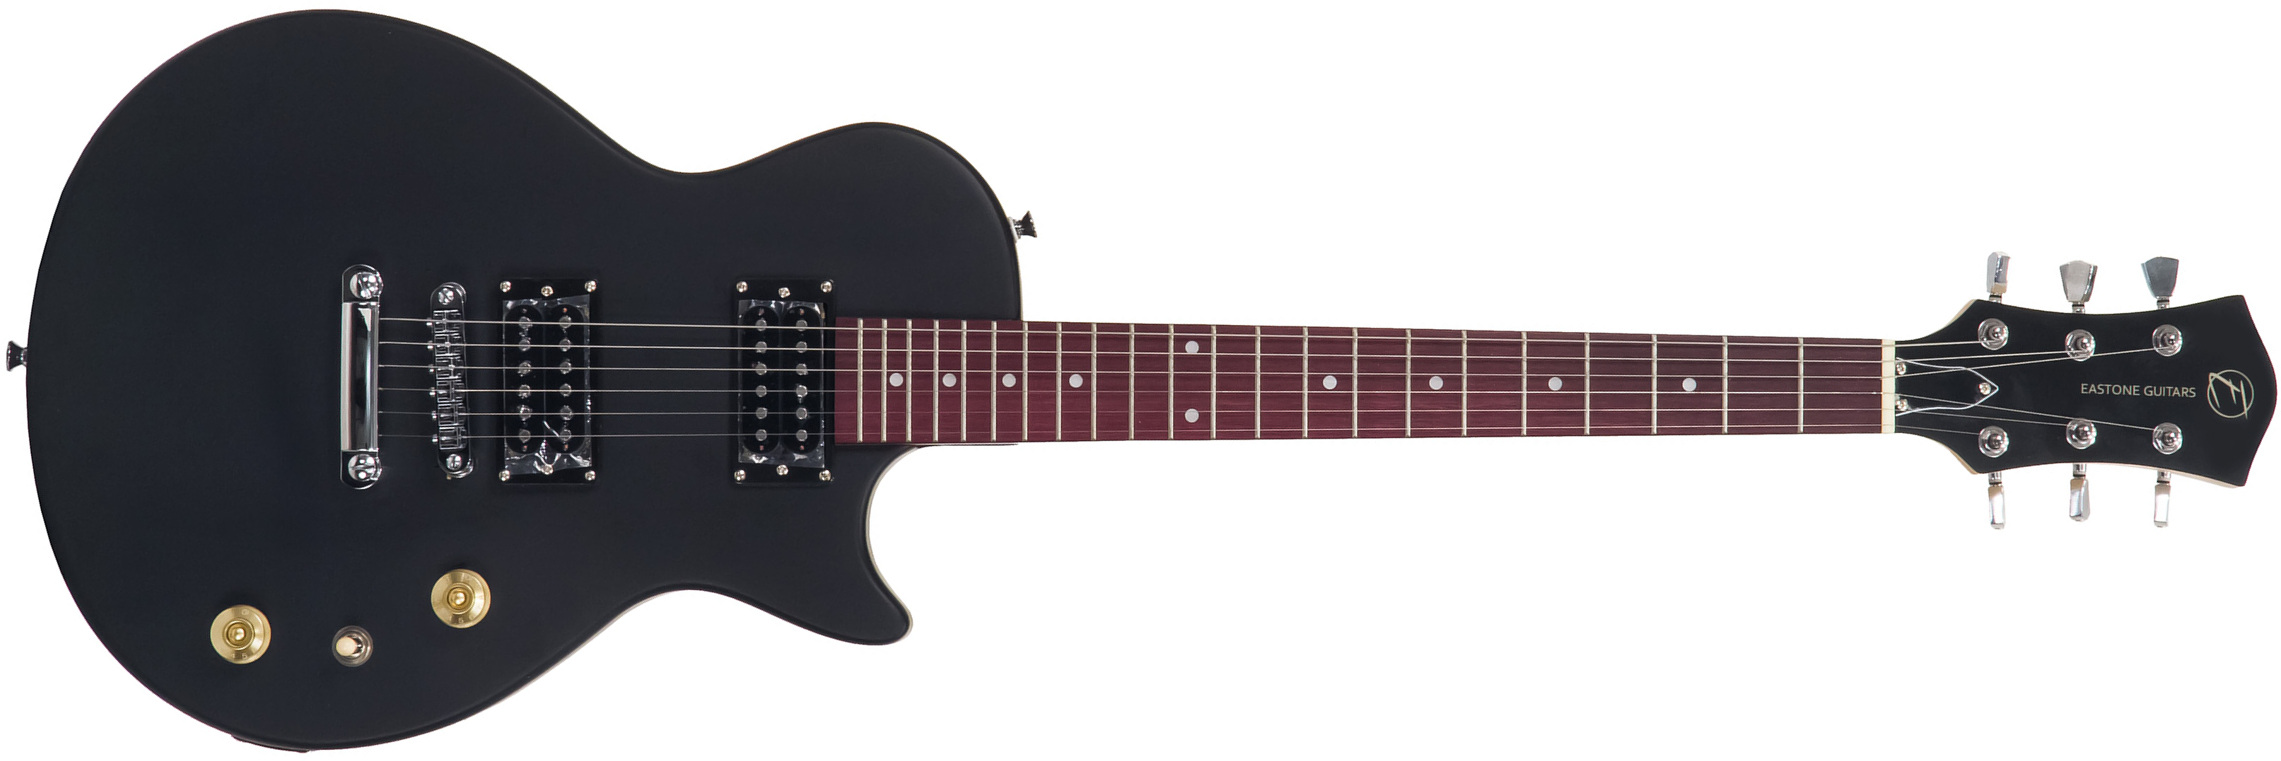 Eastone Lpl70 Hh Ht Pur - Black Satin - Guitare Électrique Single Cut - Main picture